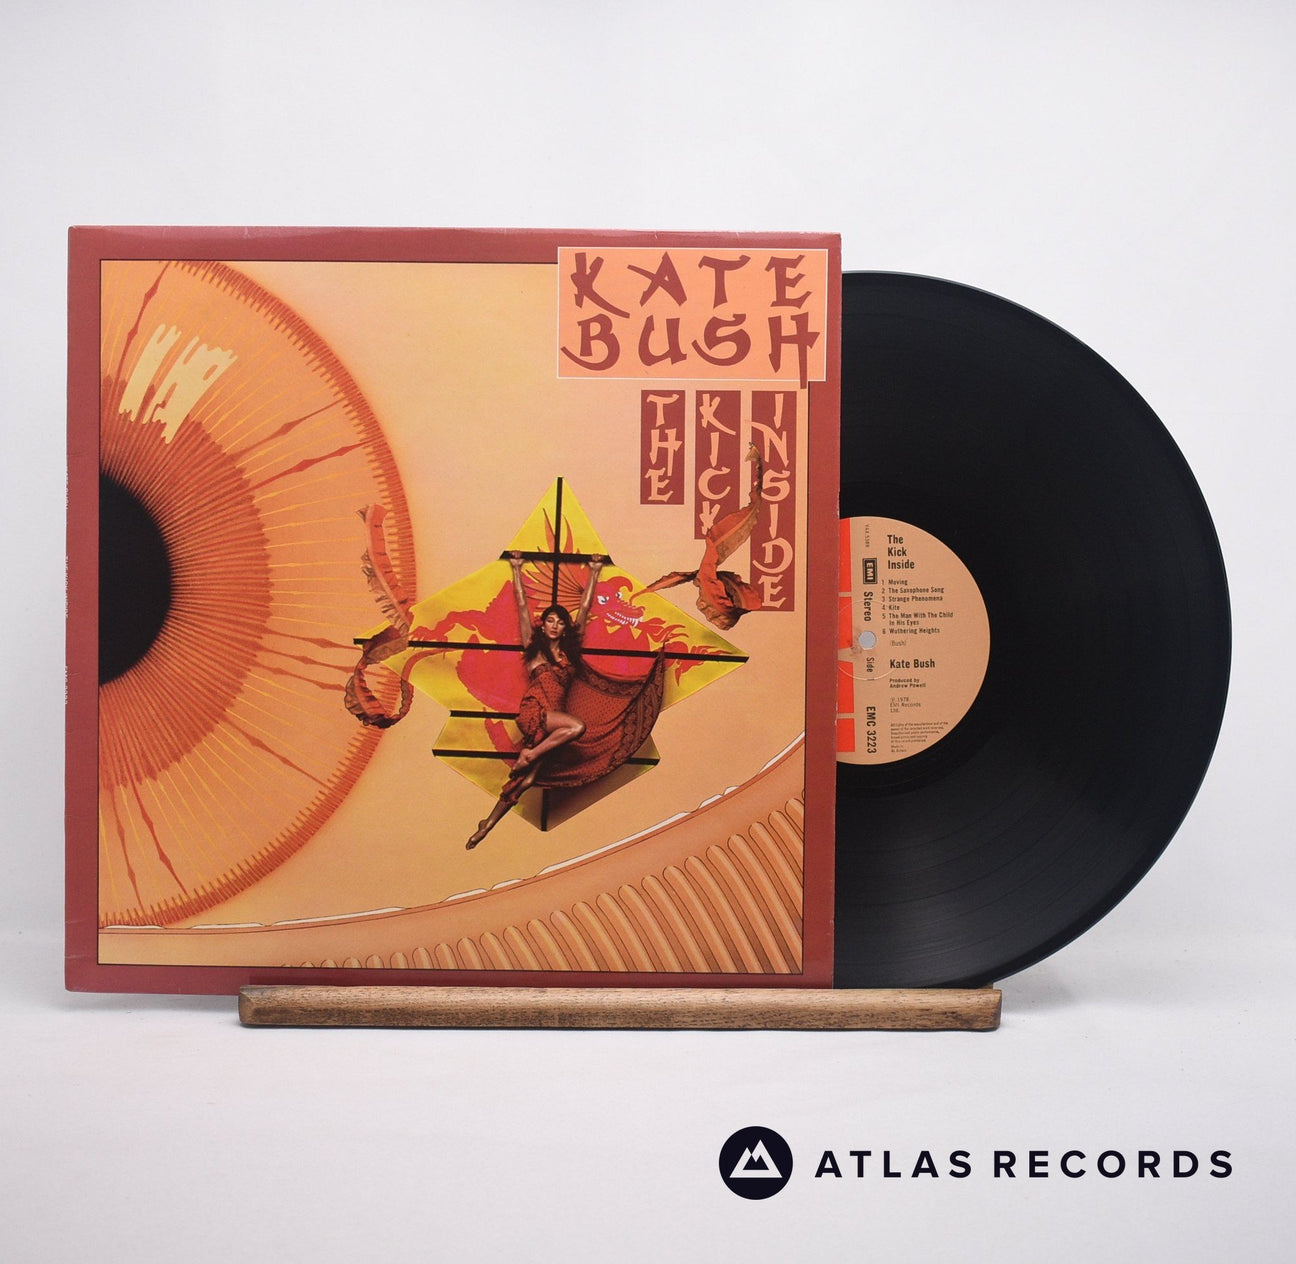 Kate Bush The Kick Inside LP Vinyl Record - Front Cover & Record